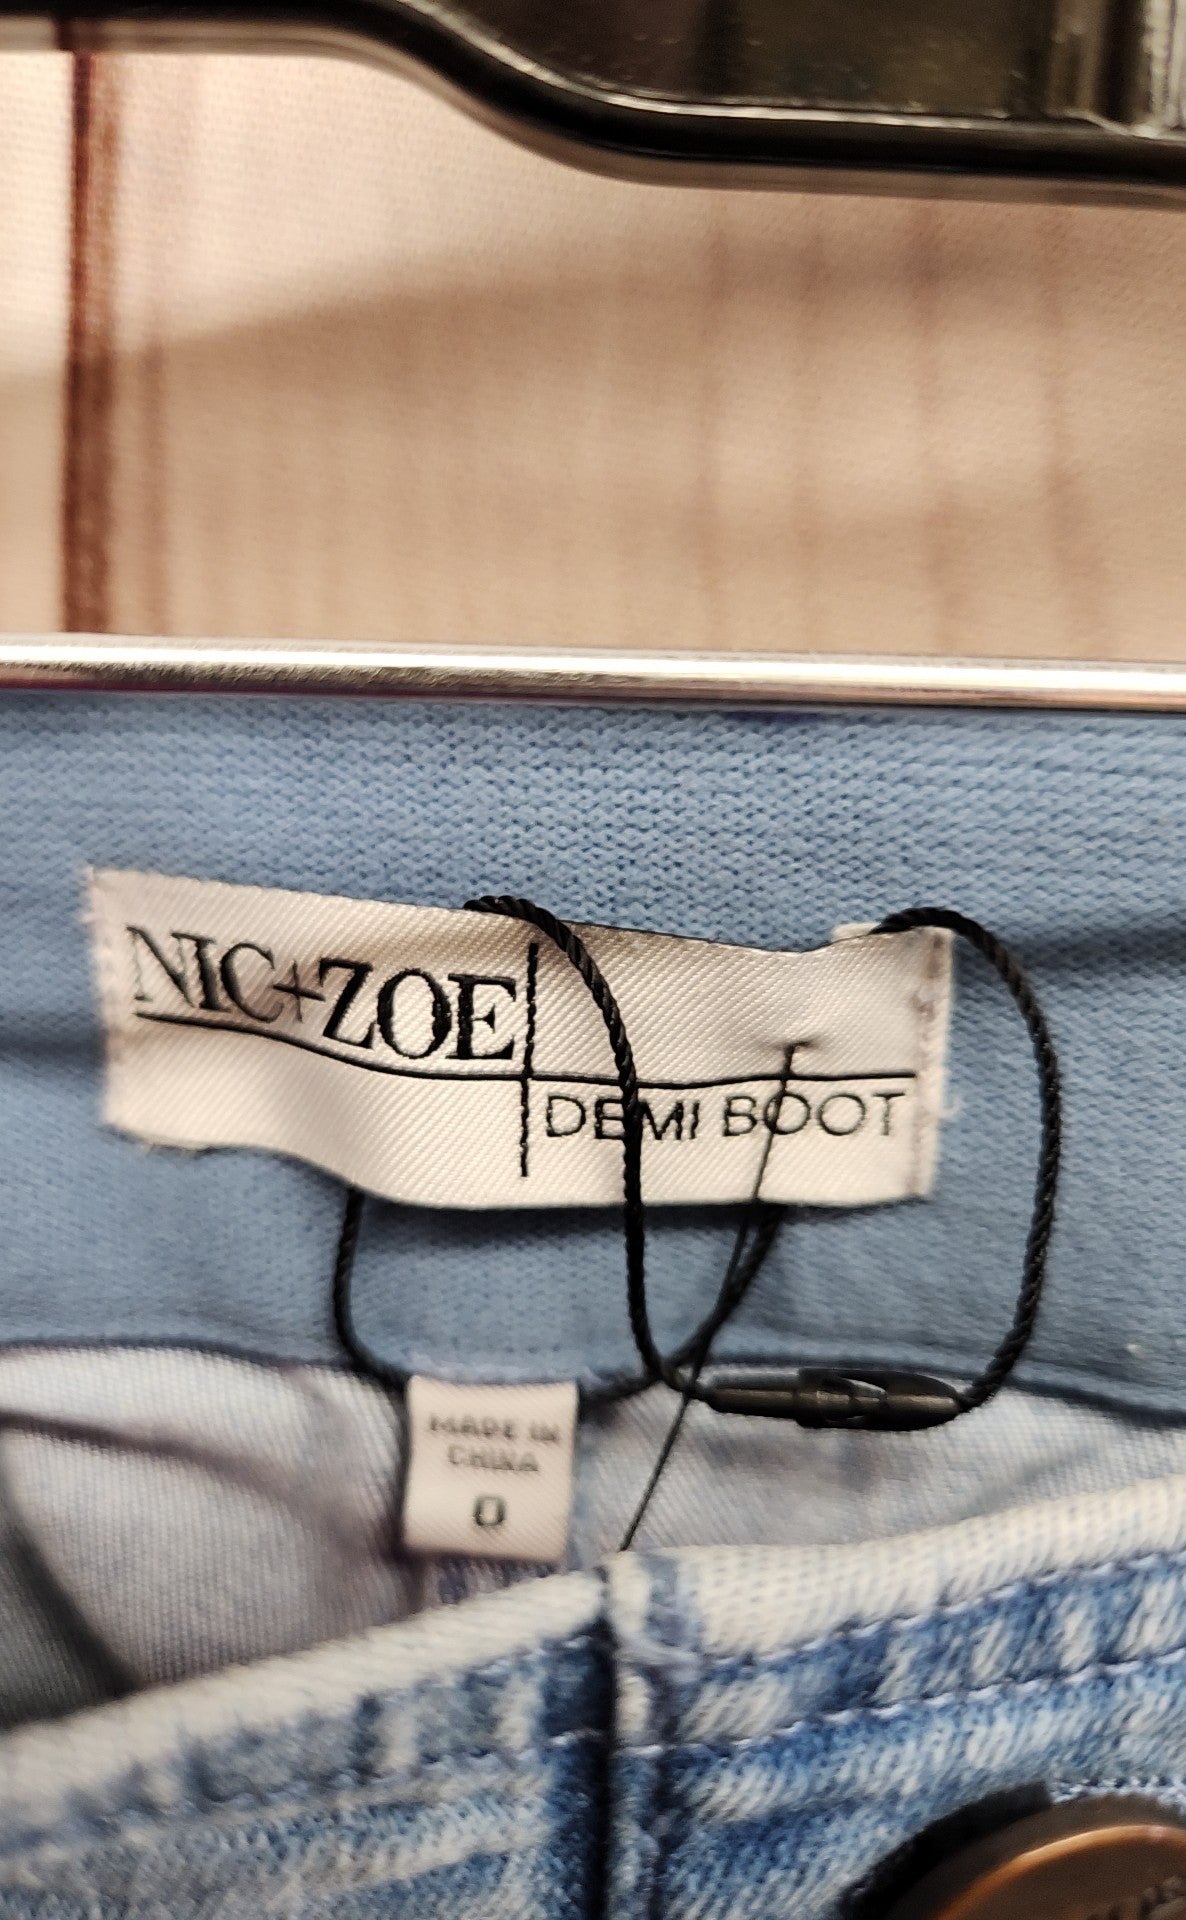 Nic & Zoe Women's Size 25 (0) Demi Boot Blue Jeans